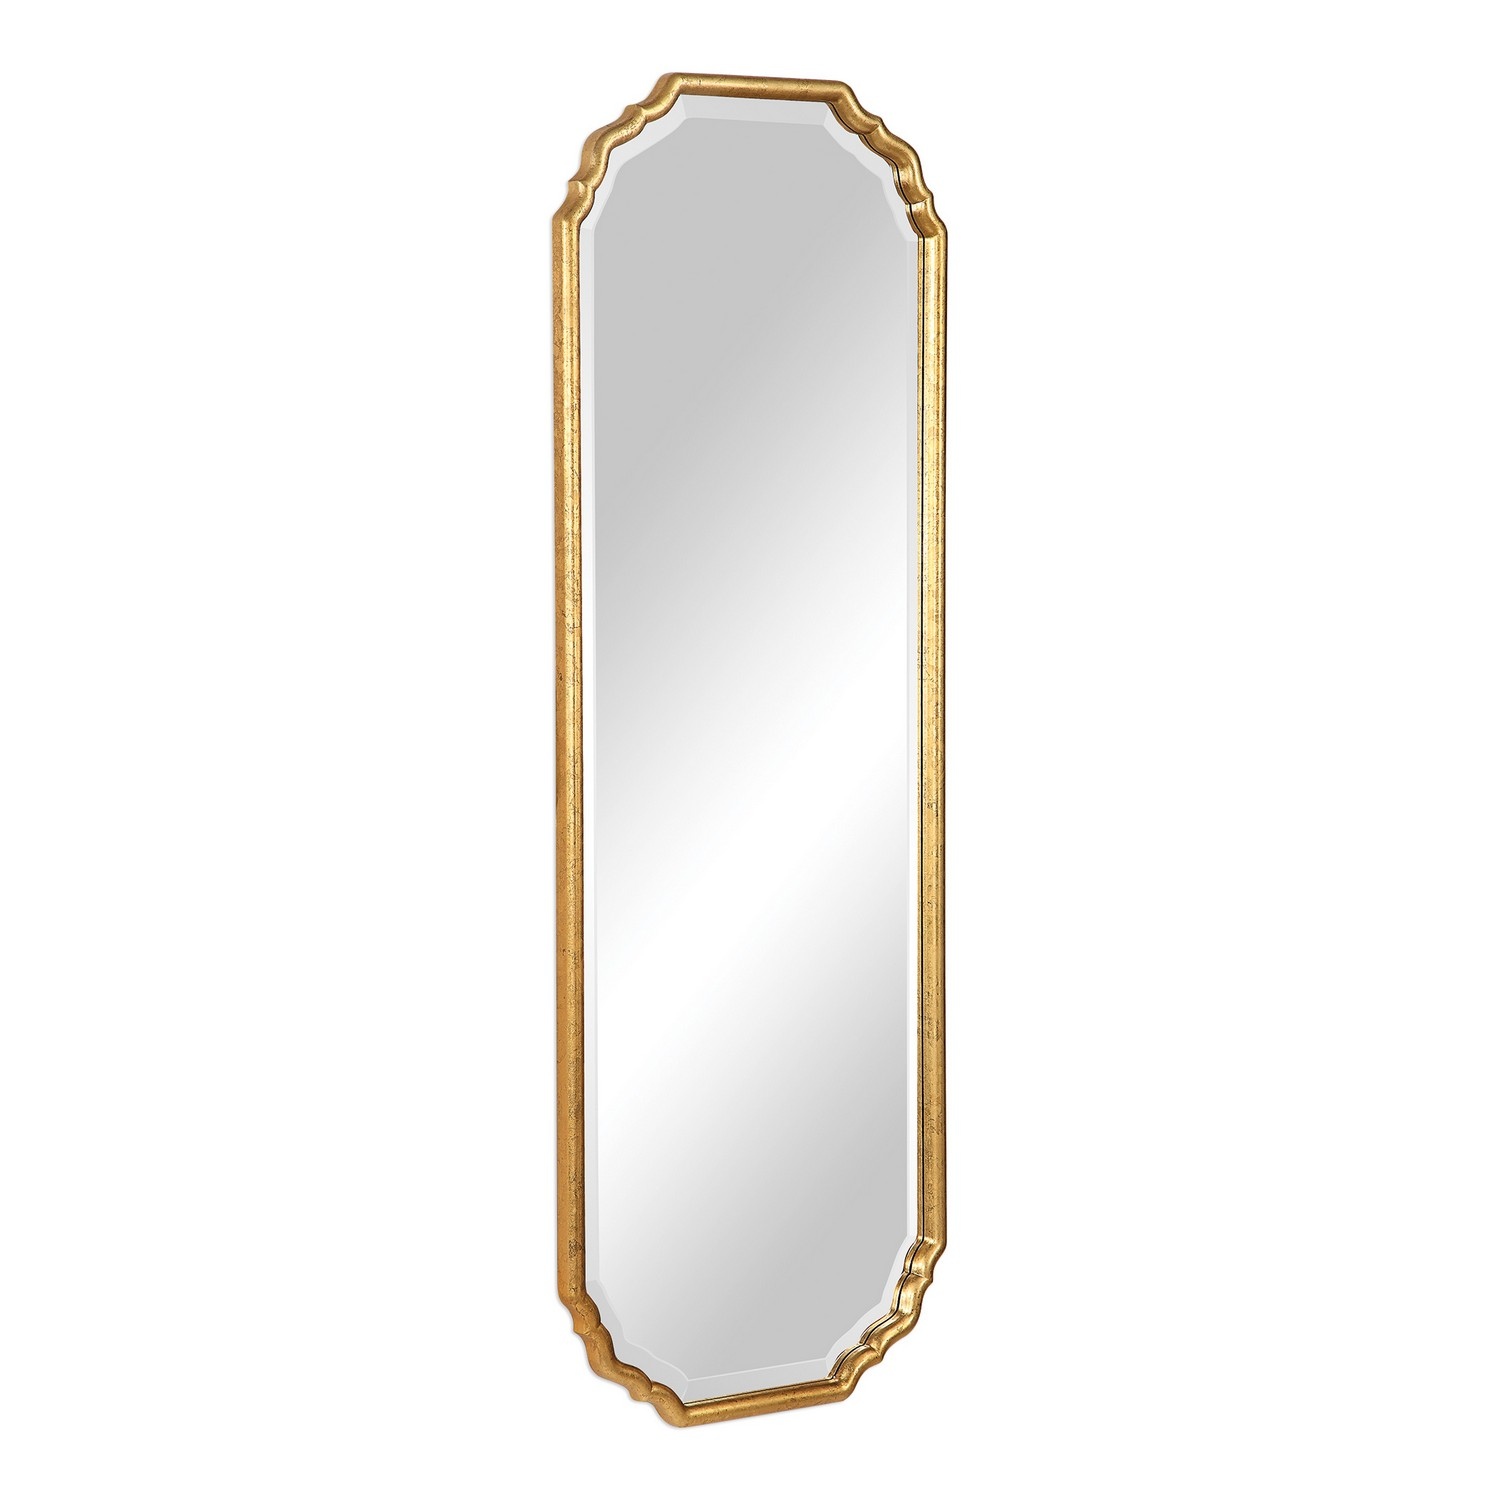 Uttermost W00433 Mirror - Antique Metallic Gold